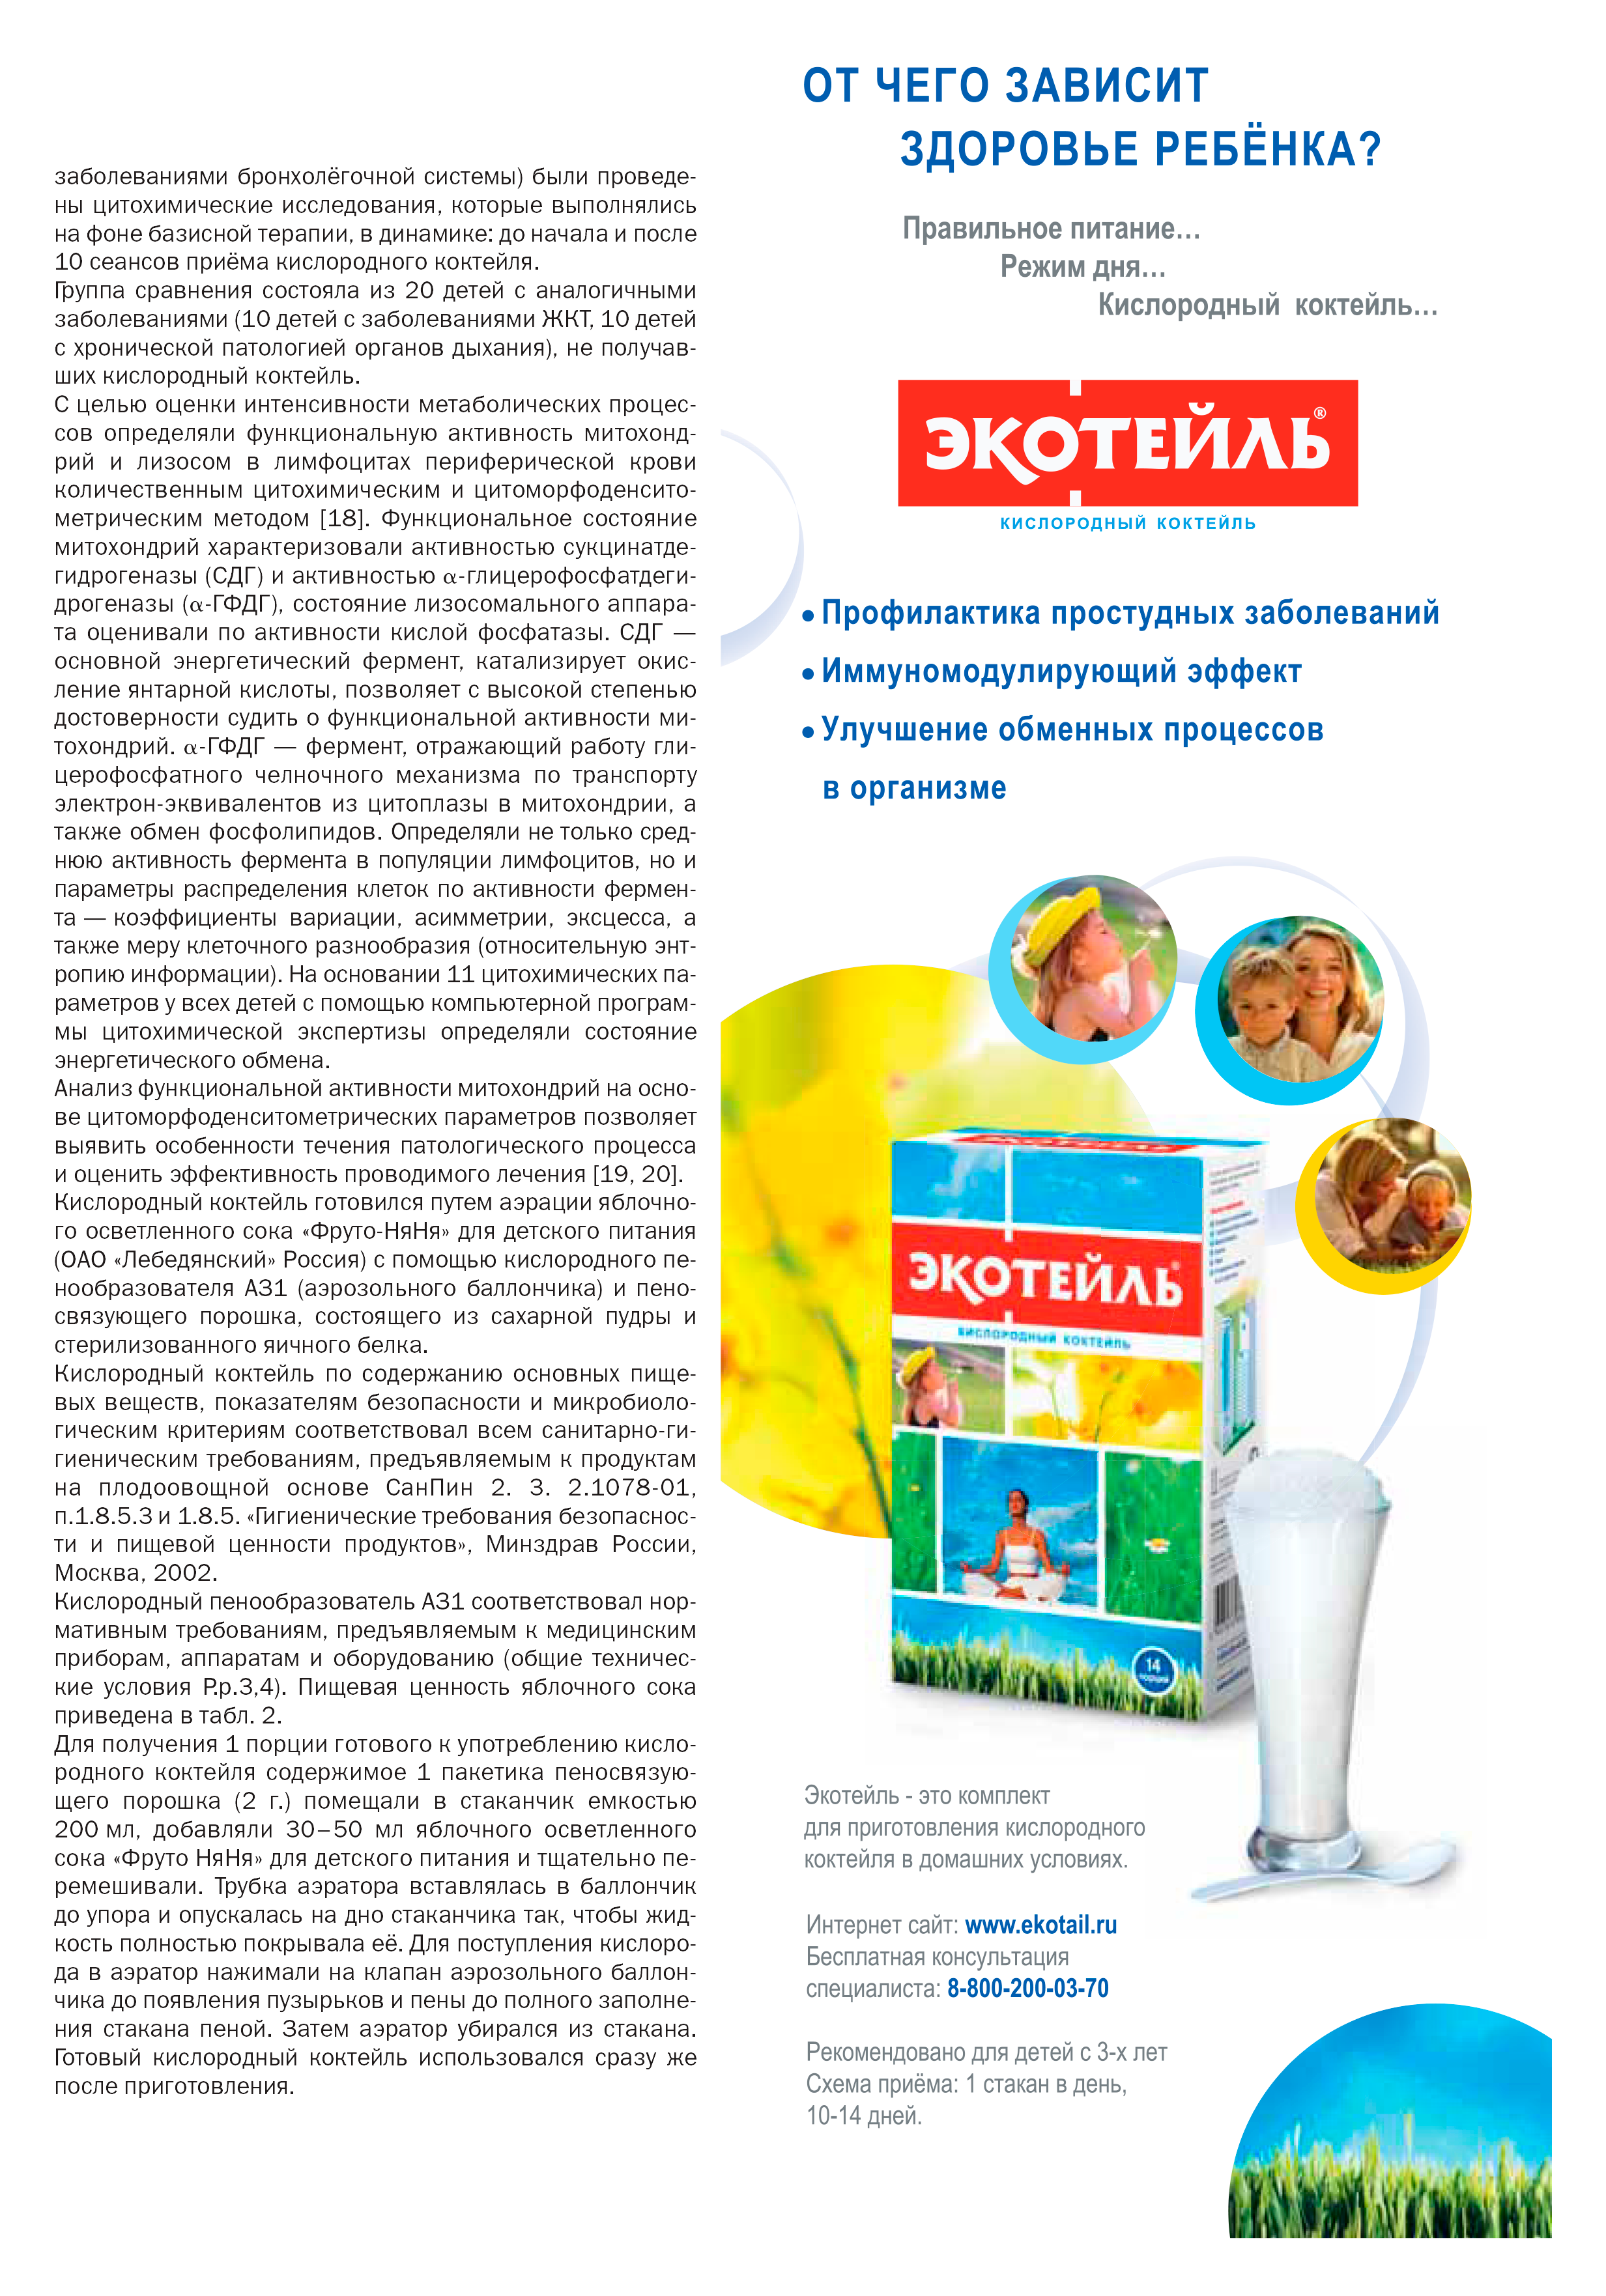 В типичной российской статье о пользе кислородных коктейлей реклама этого продукта размещена прямо в тексте. Источник: «Киберленинка»